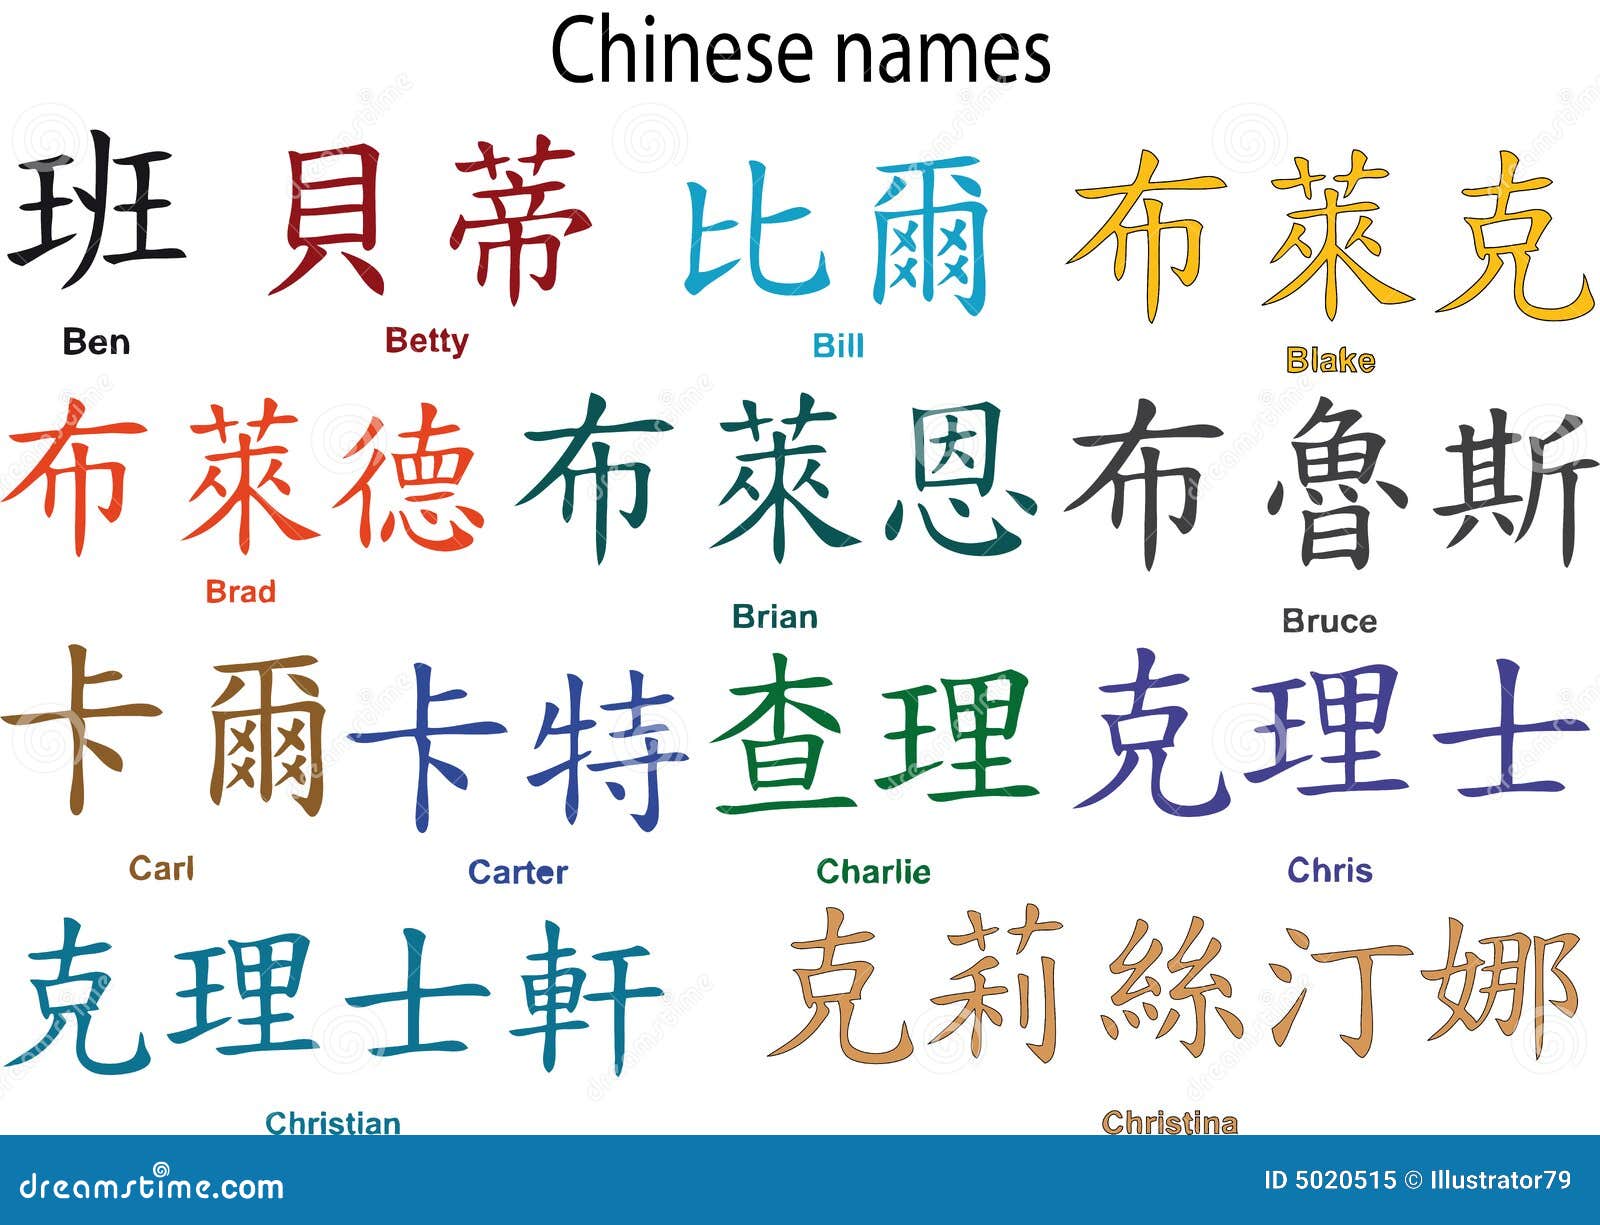 Как будет по китайски ж. Китайские имена. Китайские клички. Китайские имена на китайском иероглифы. Самые распространенные китайские имена.